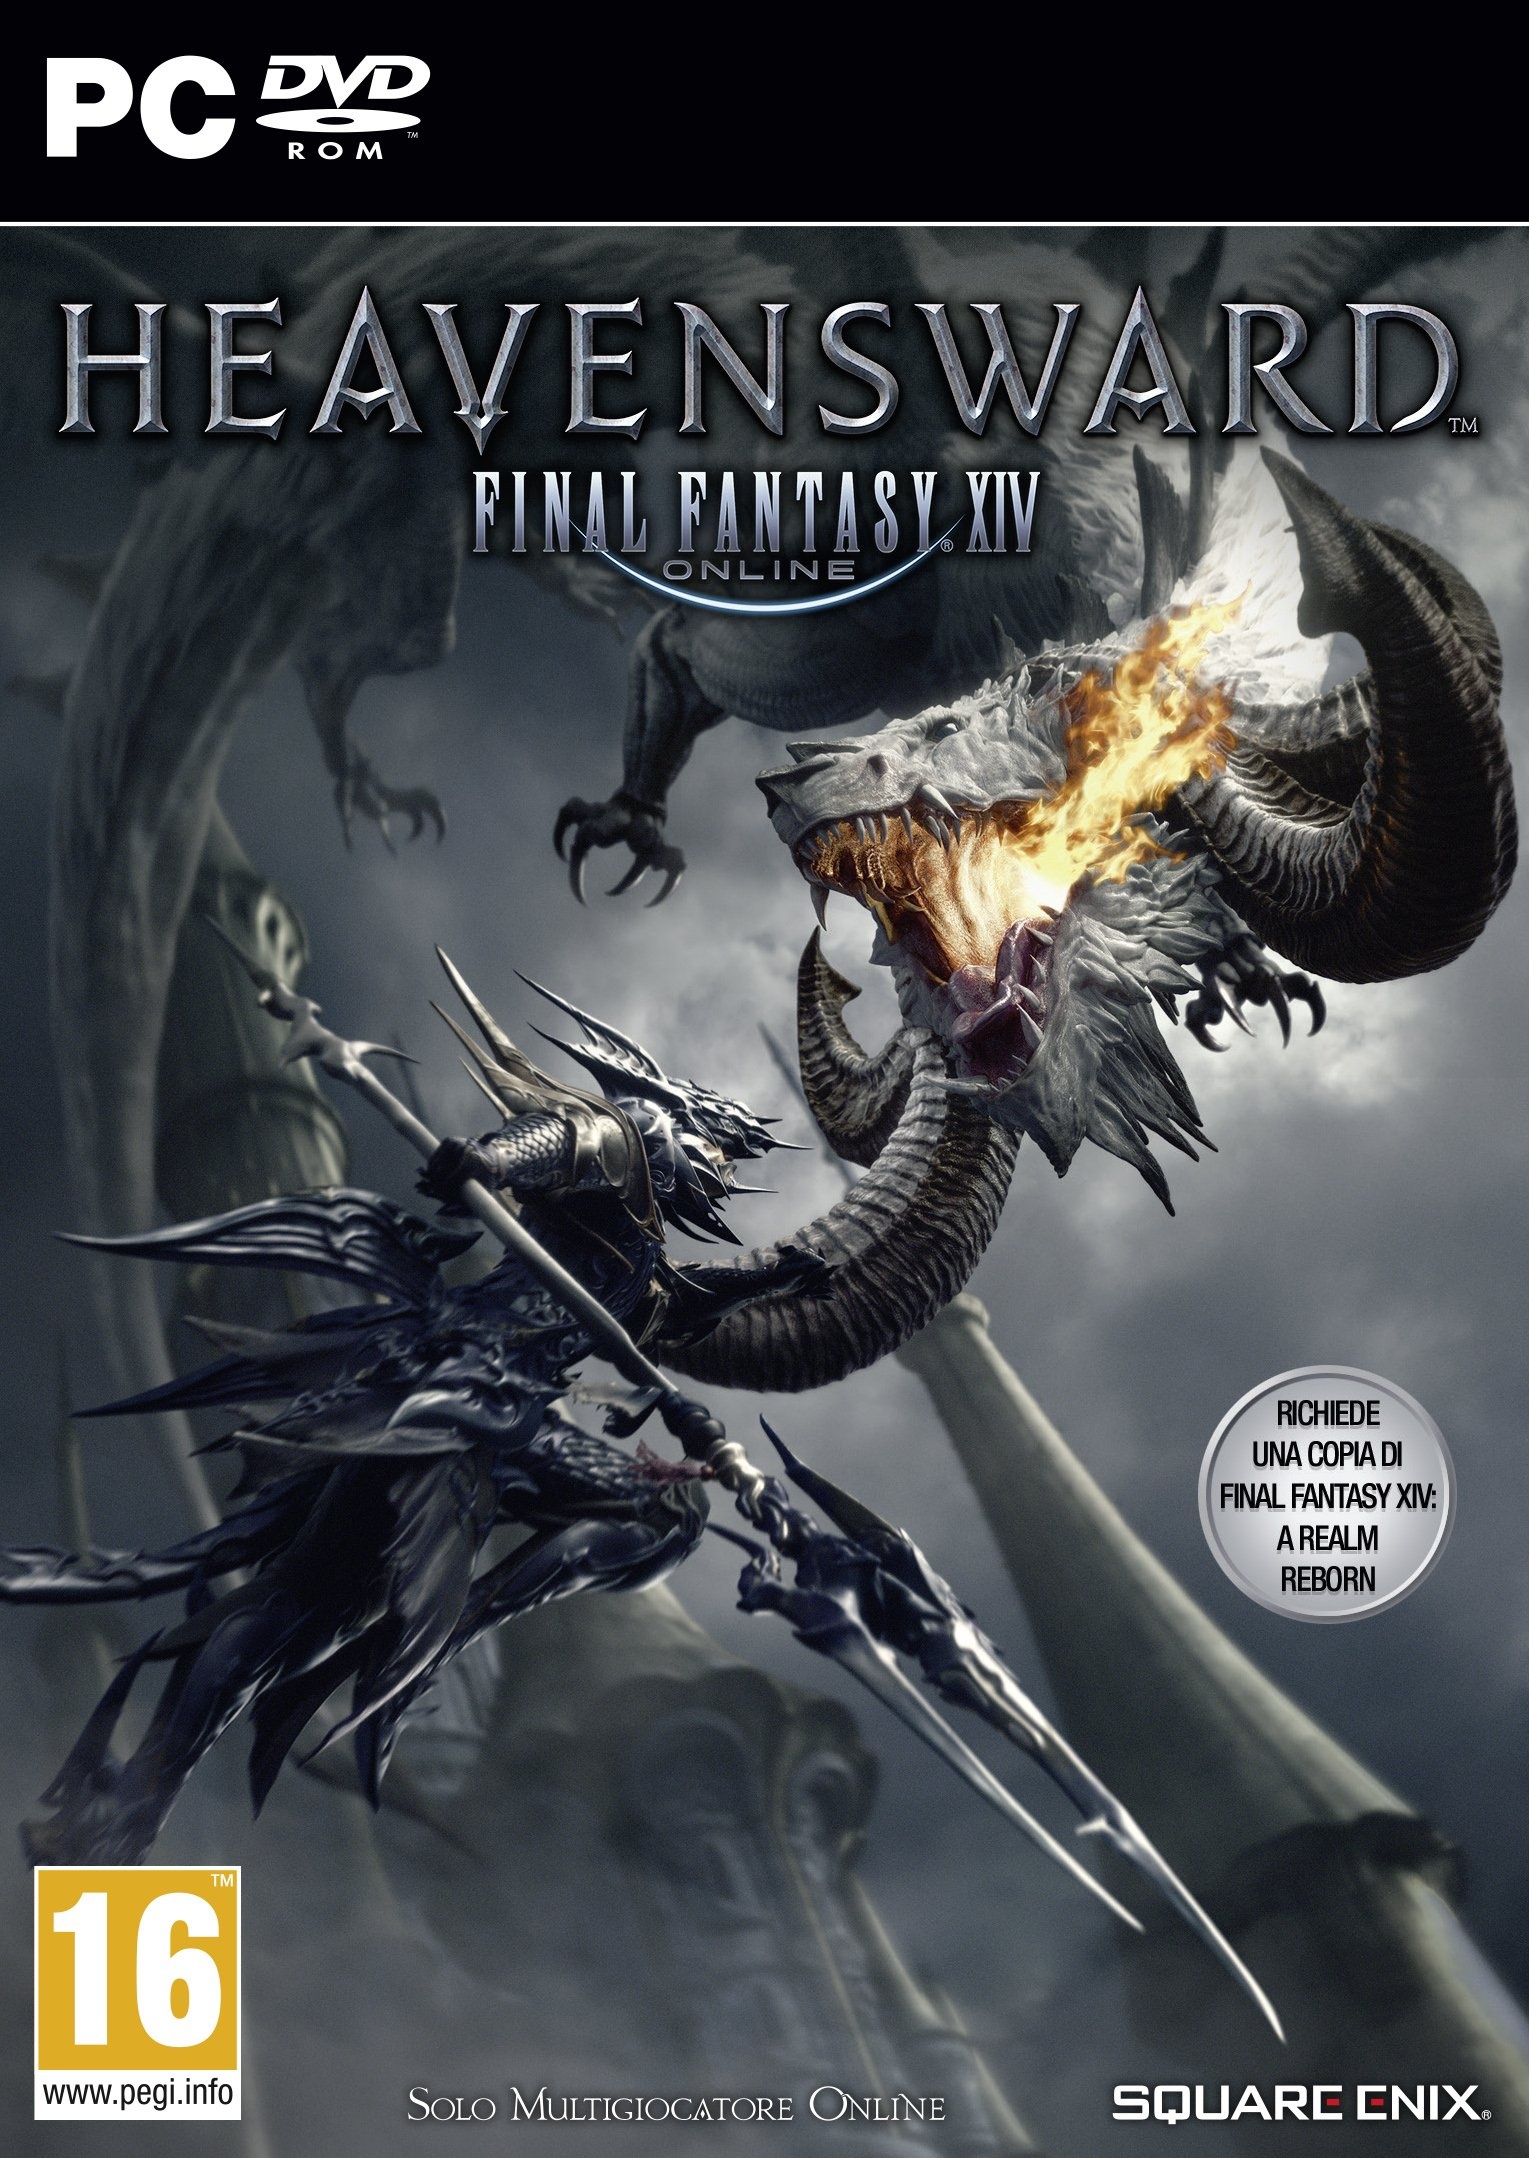 Square Enix FINAL Fantasy XIV: HEAVENSWARD PC